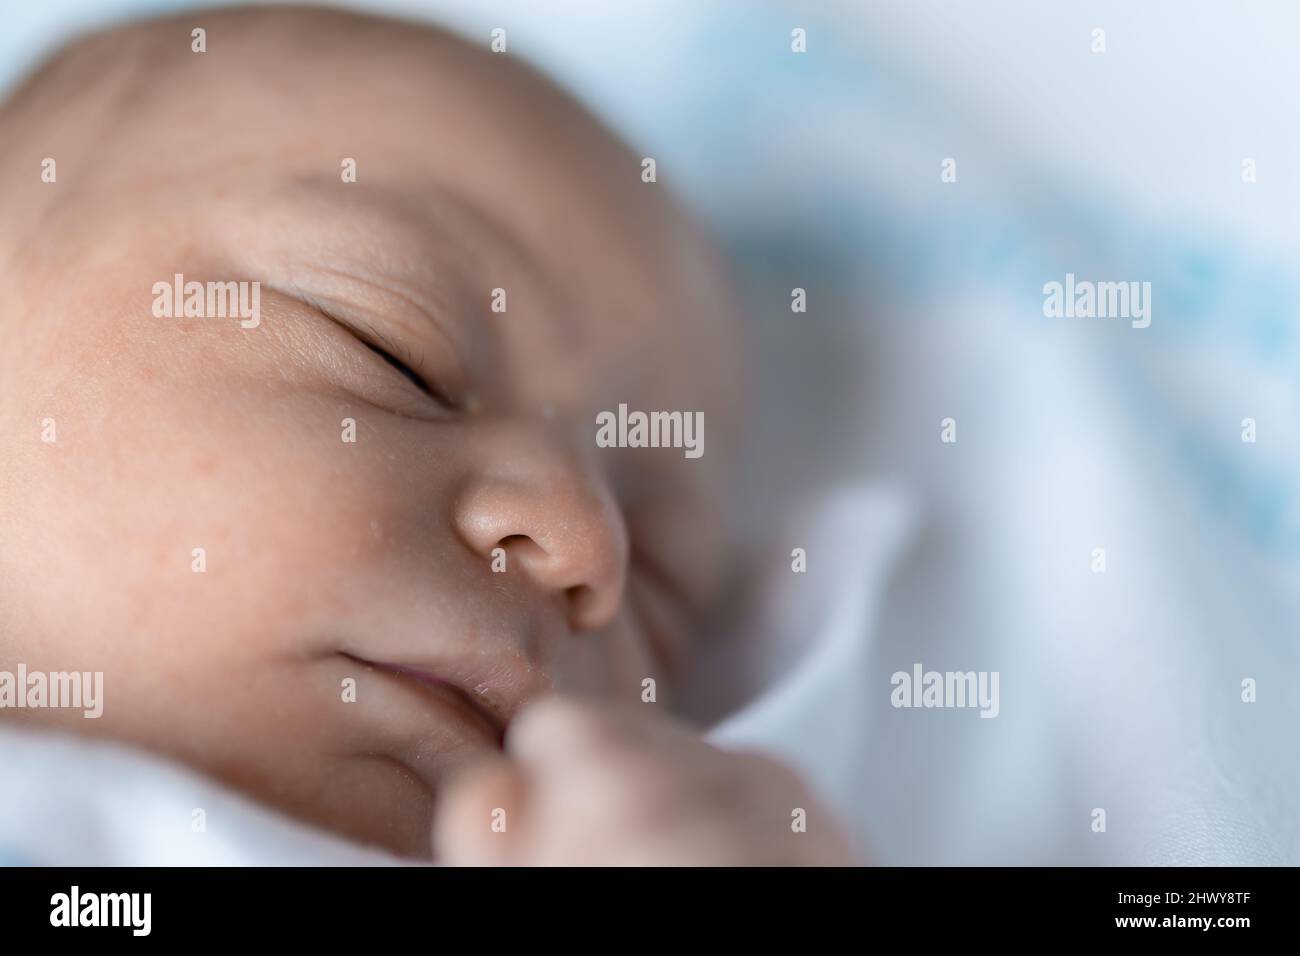 portrait du visage et de la petite main d'un nouveau-né endormi avec des heures de vie à l'hôpital de maternité. naissance, nouvelle vie et concept futur. selec Banque D'Images